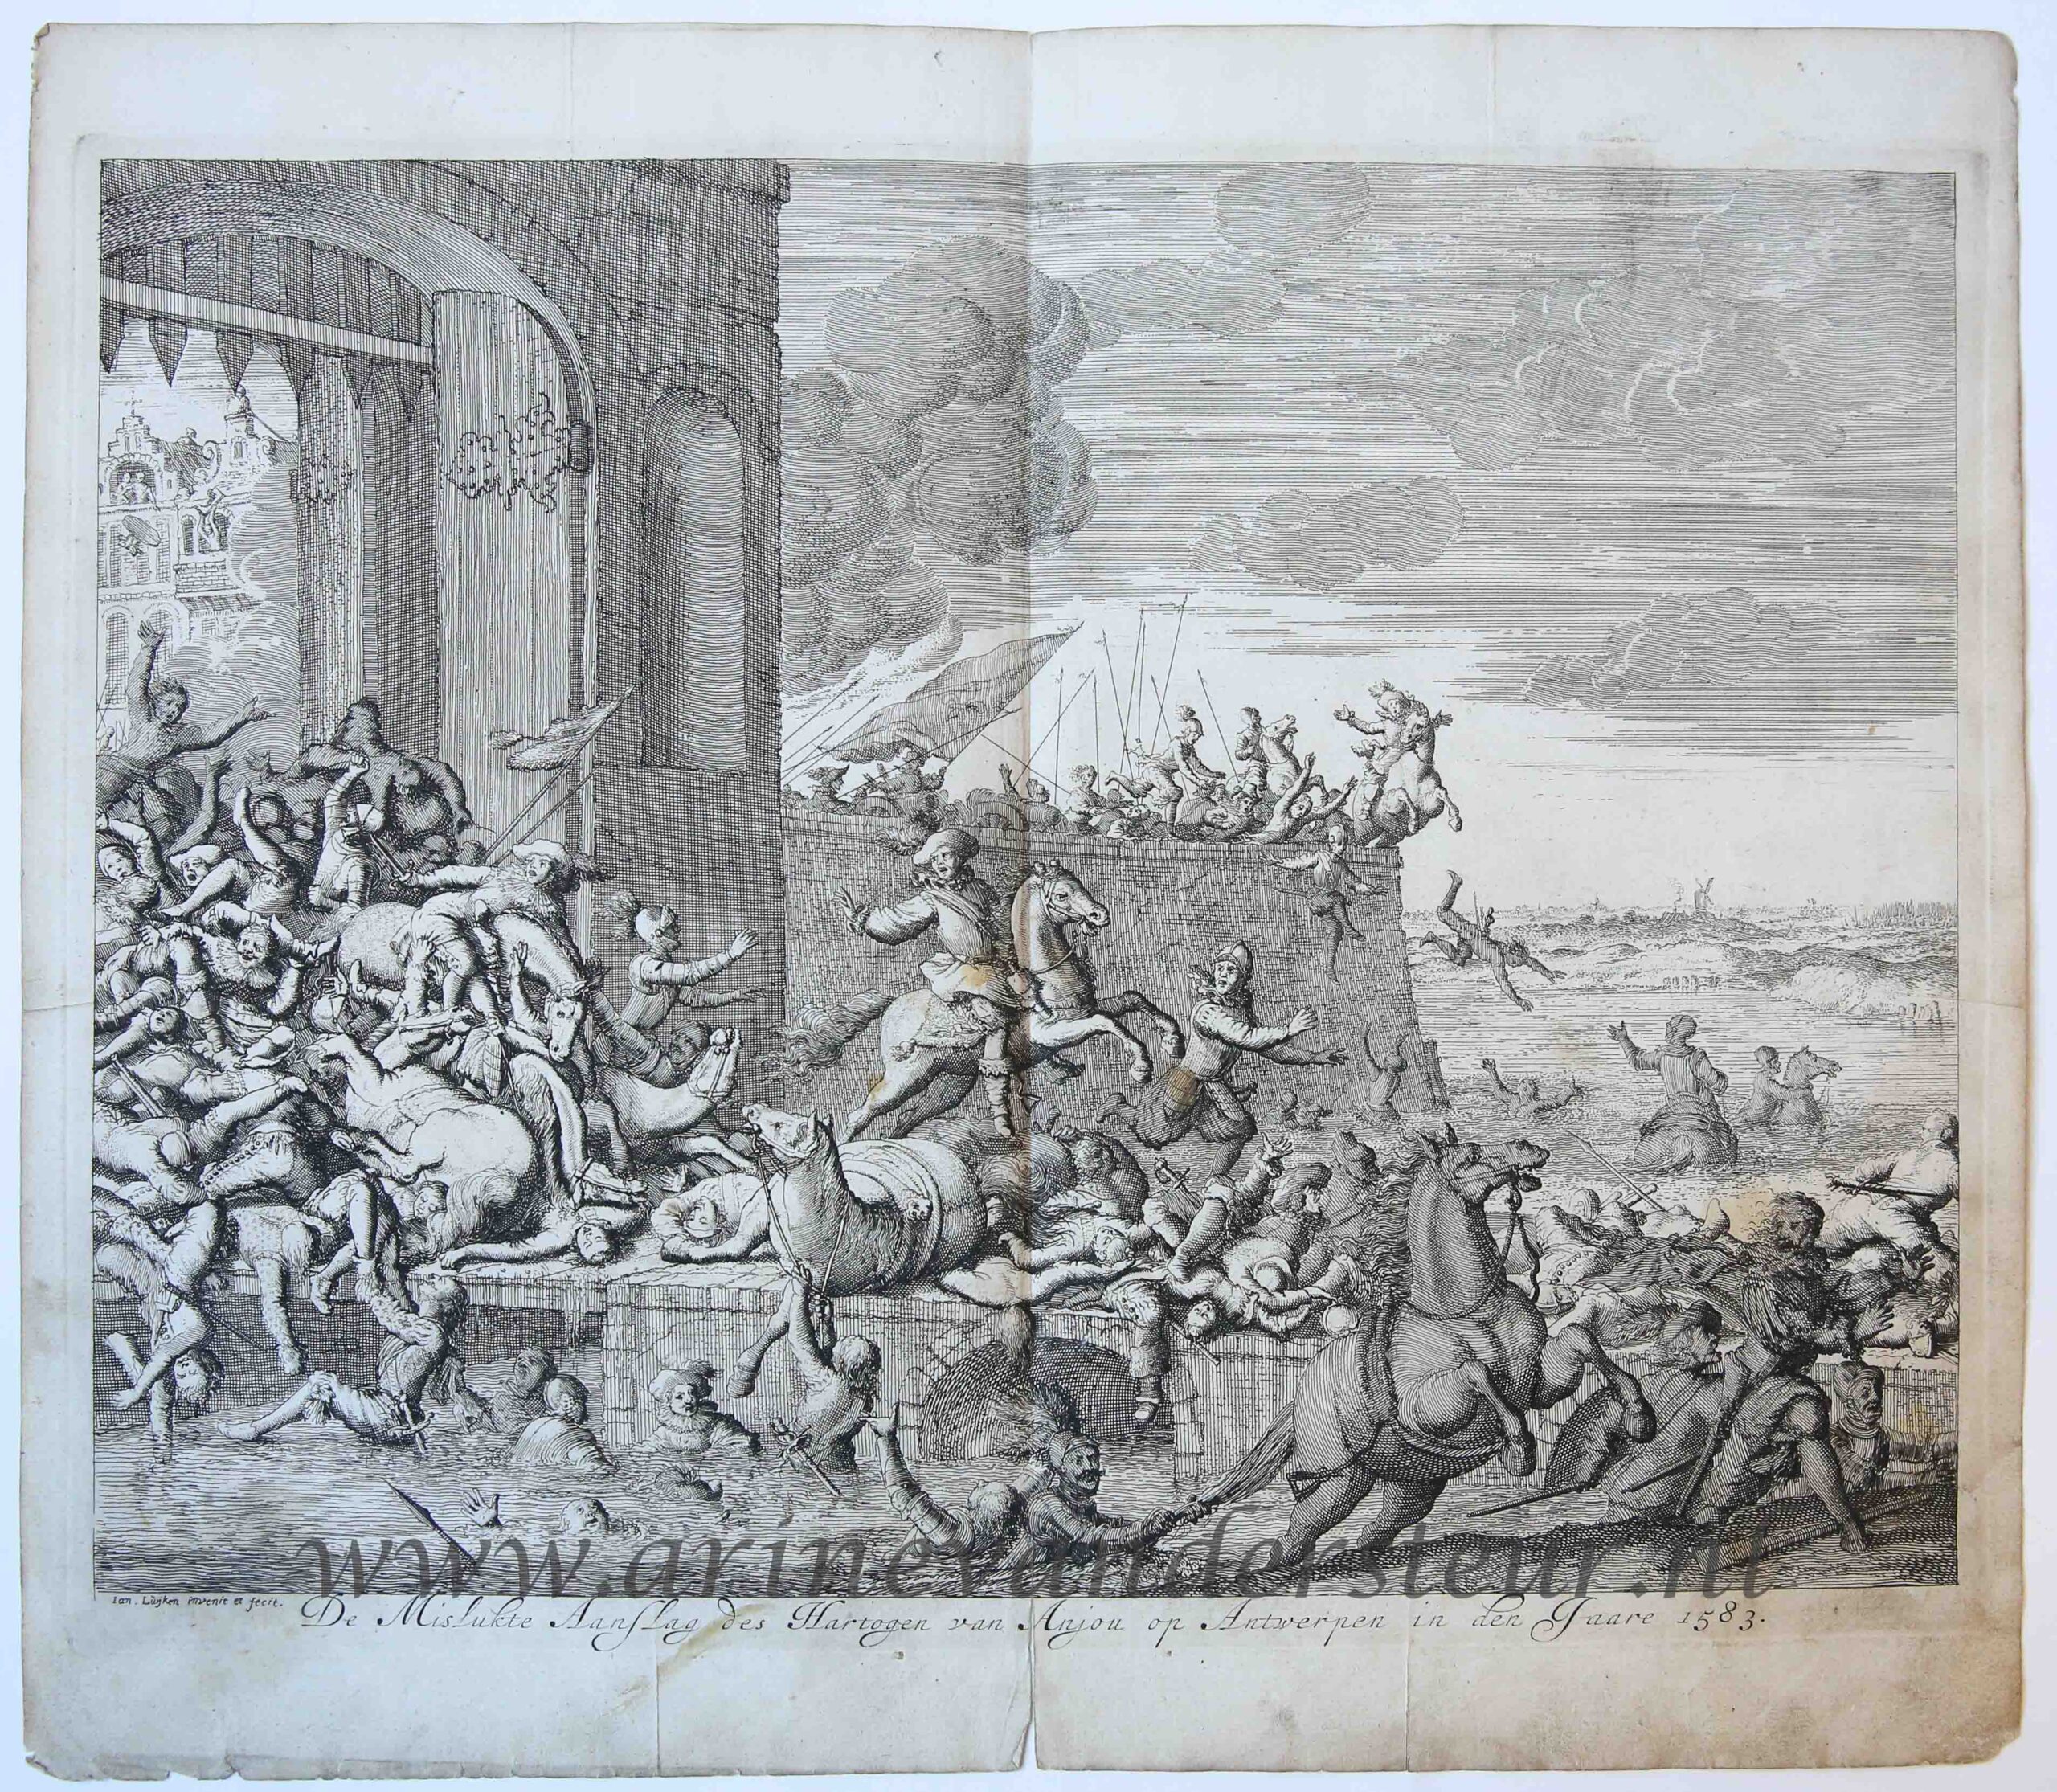 [Antique print, etching] 'De mislukte aanslag des hartogen van Anjou op Antwerpen in den jaare 1583'; French Fury, 1583, published 1679.